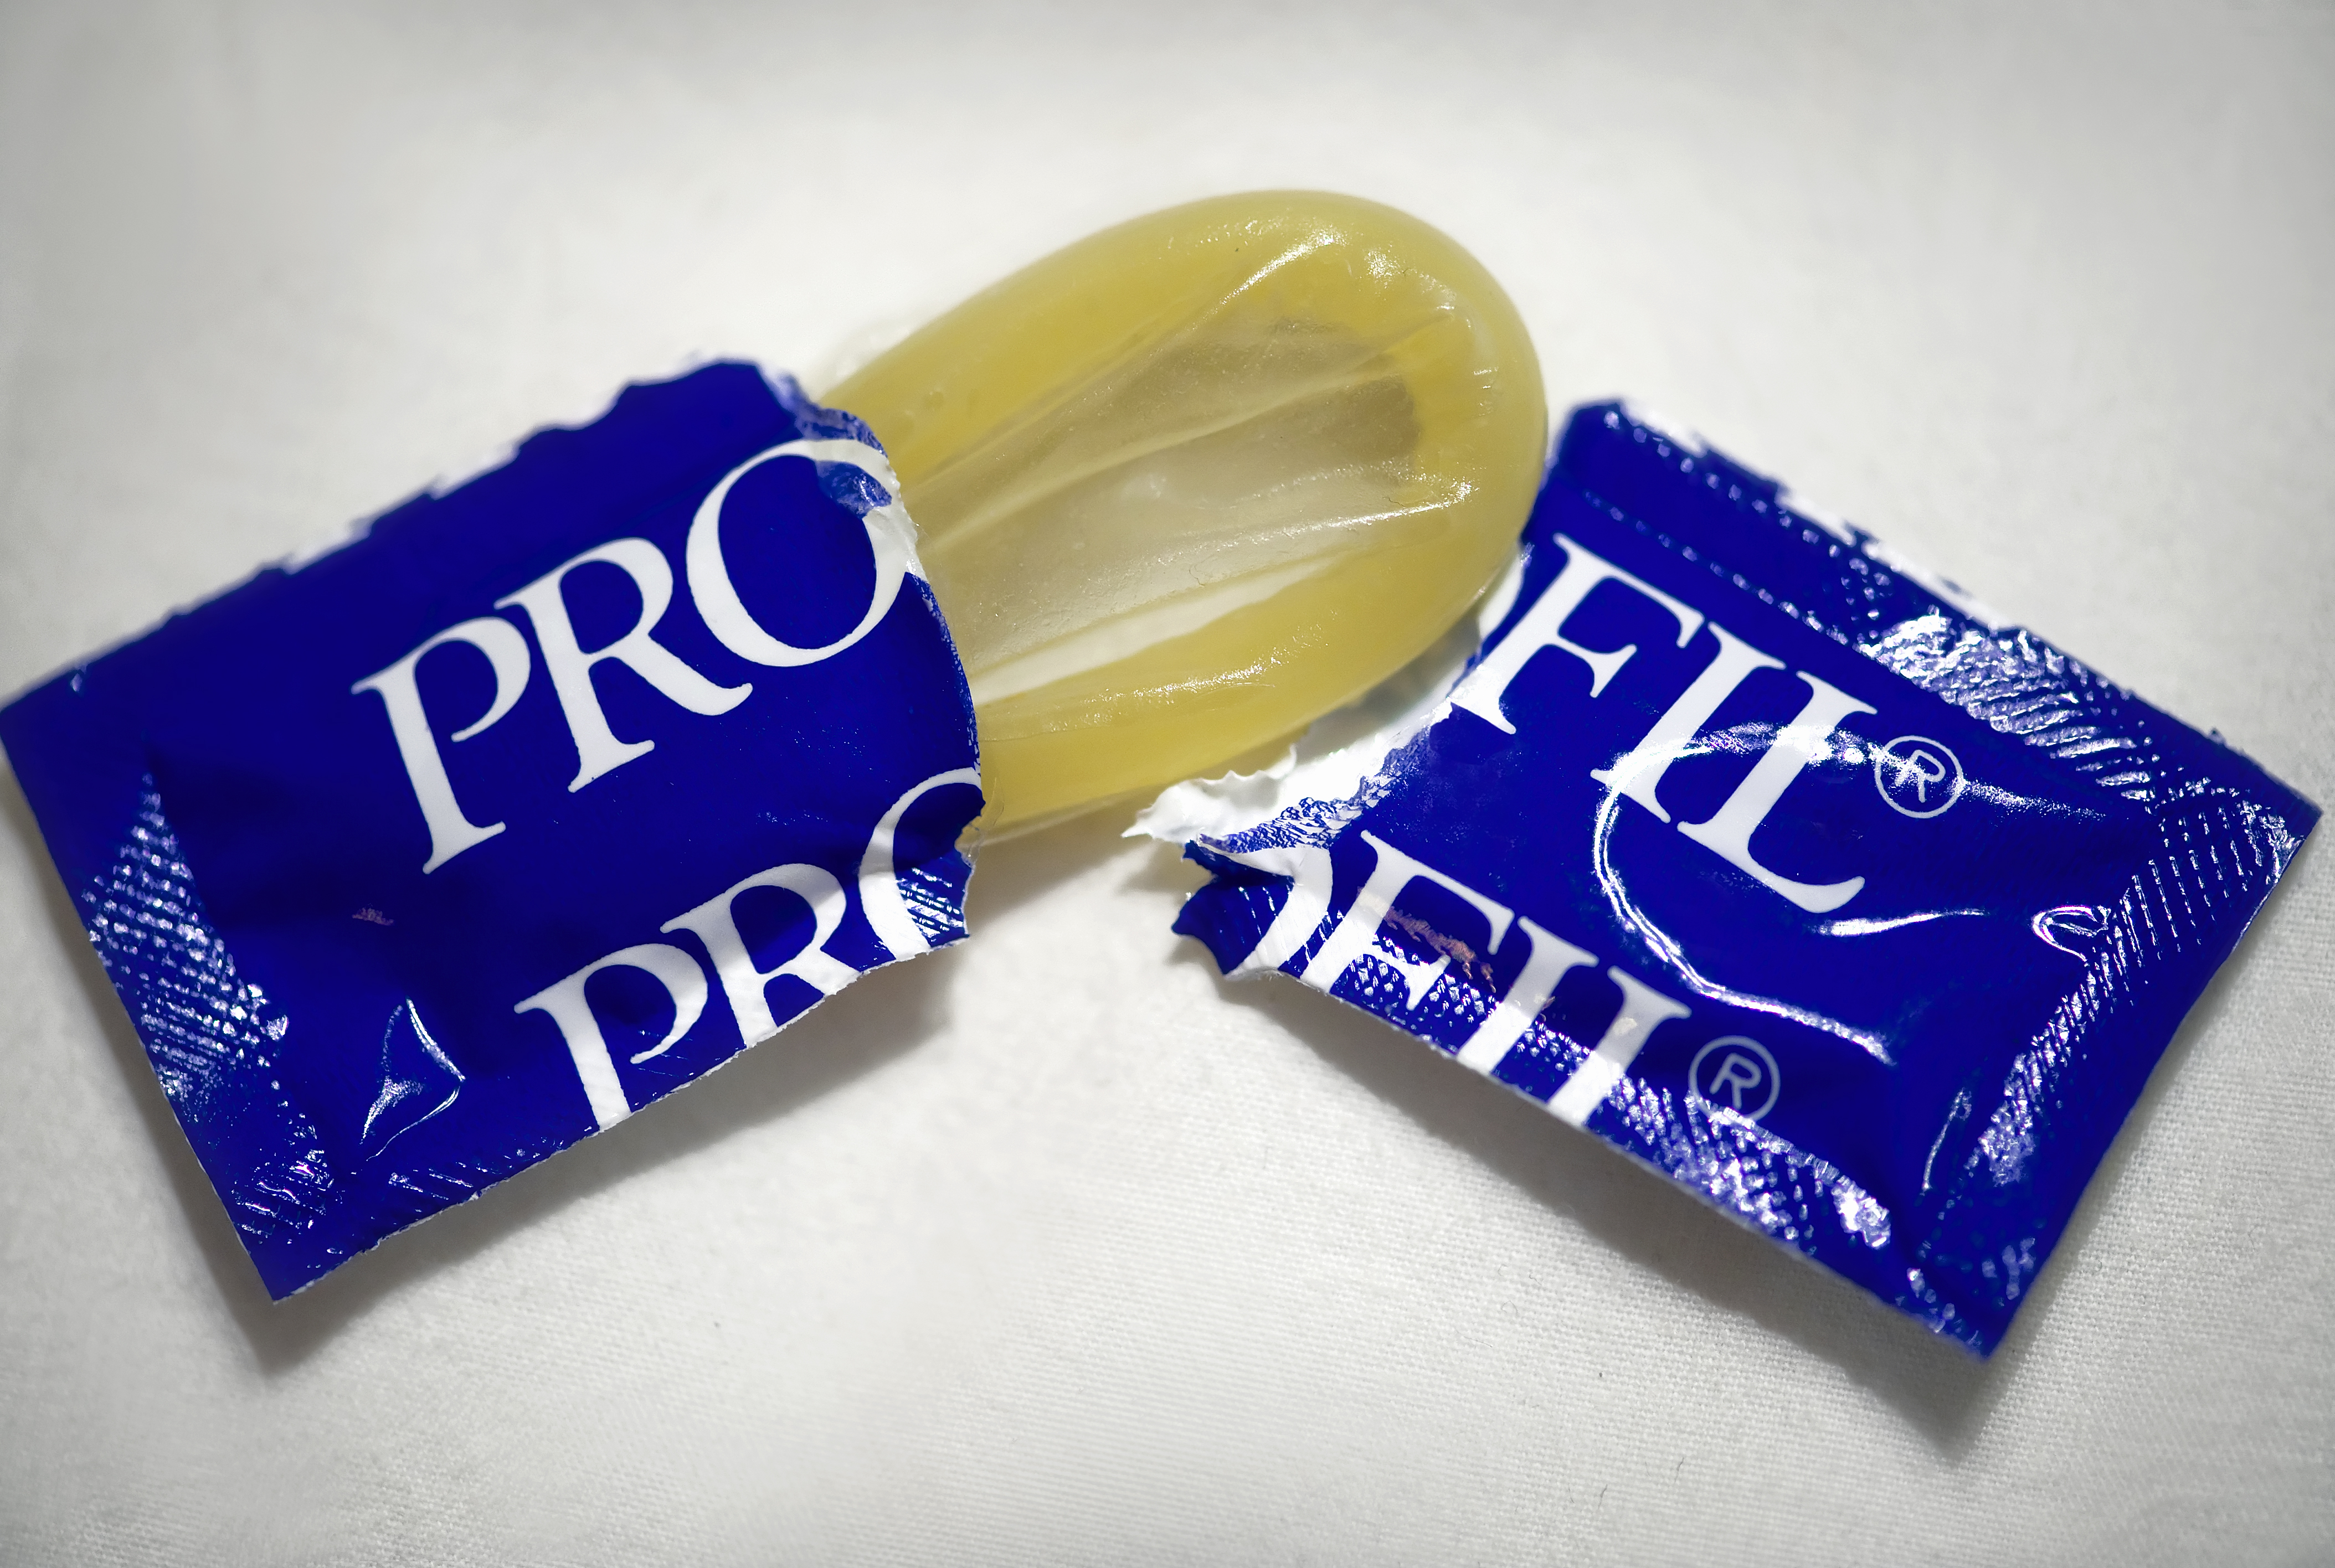 Kondomen hade lämnats kvar av sällskapet "Utan under", som anordnat sexfester i lokalen.